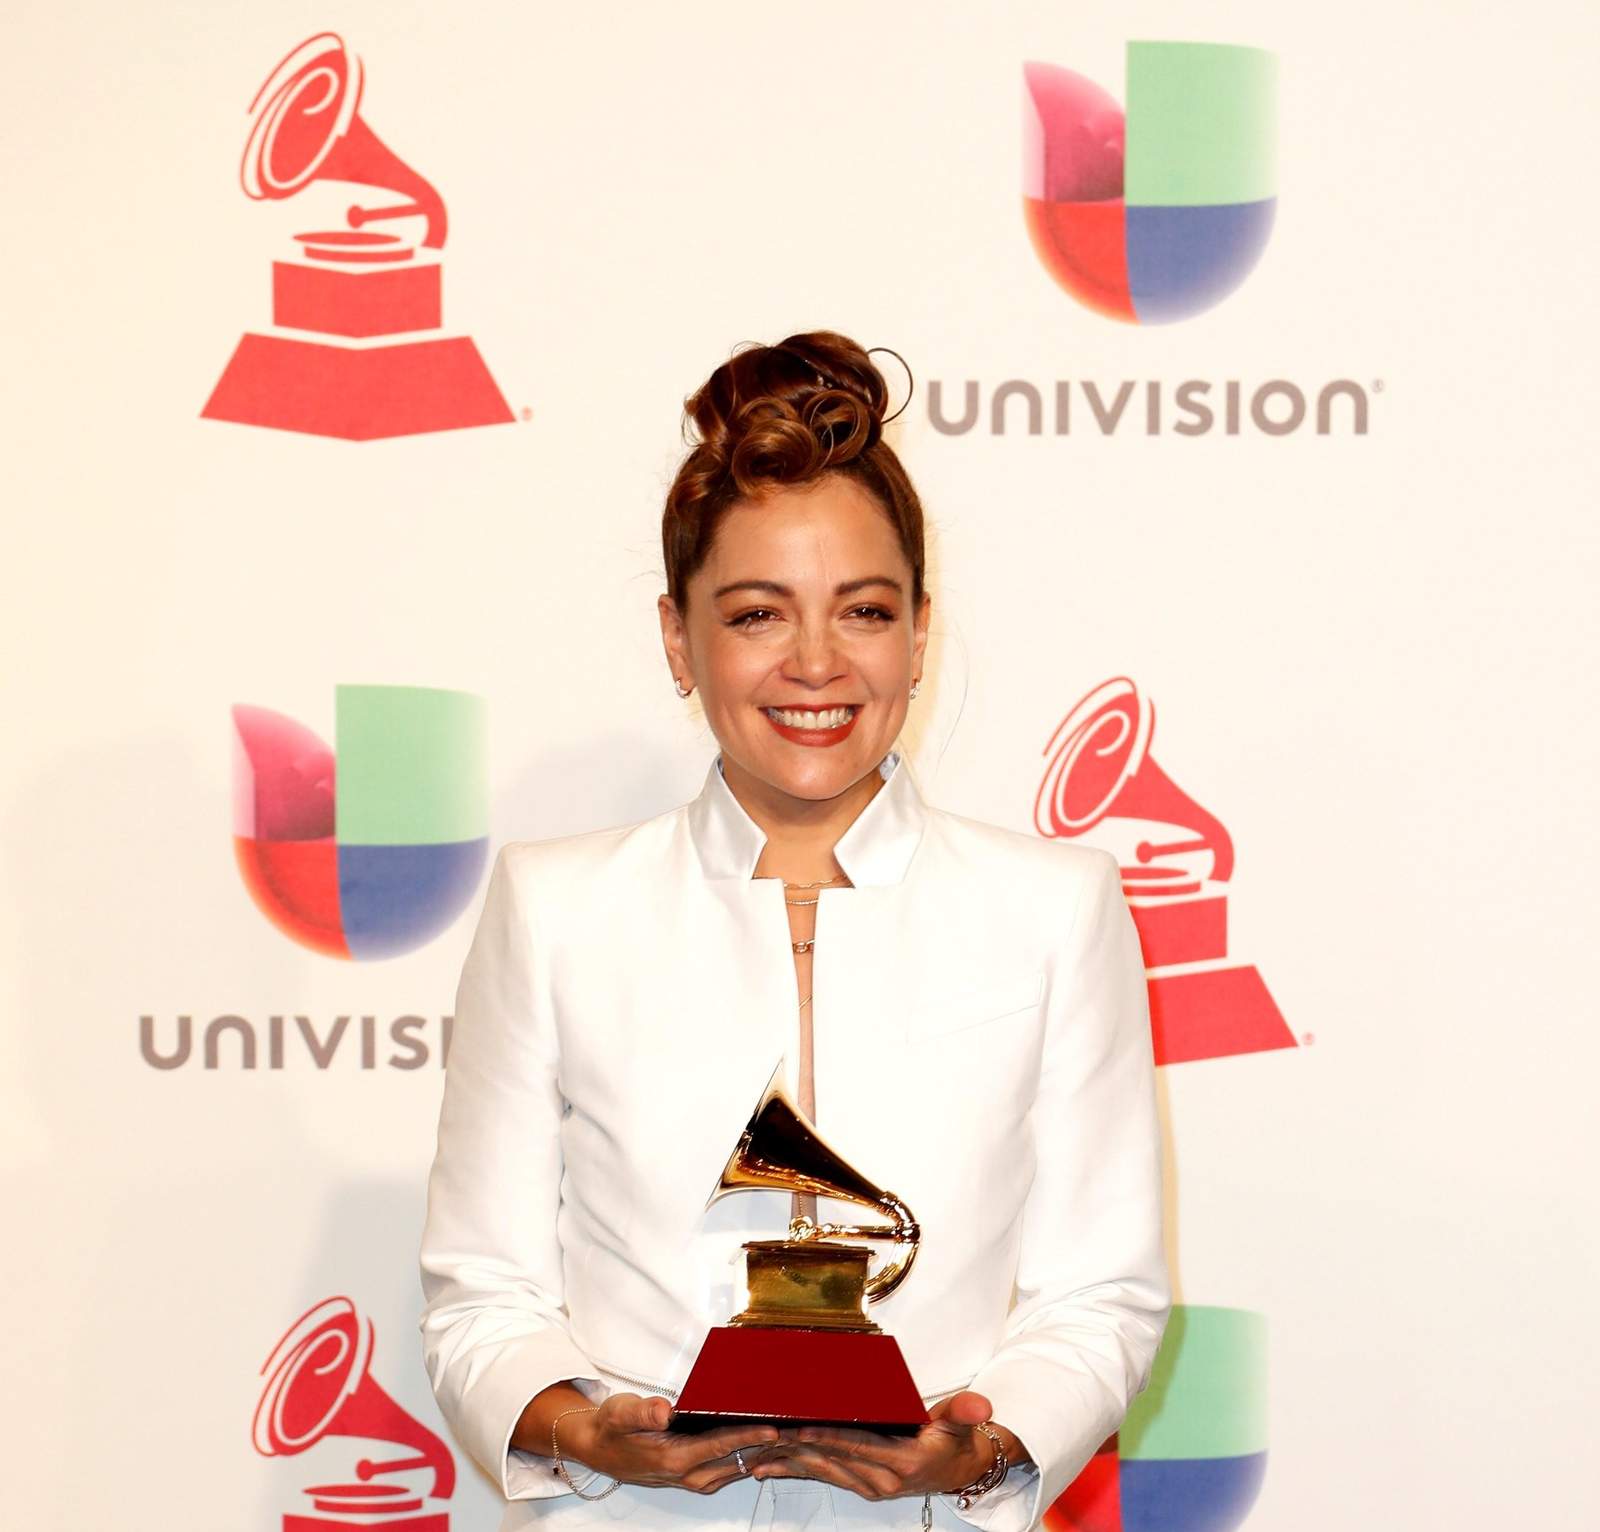 Se viraliza reacción de Natalia Lafourcade ante Grammy de Maluma